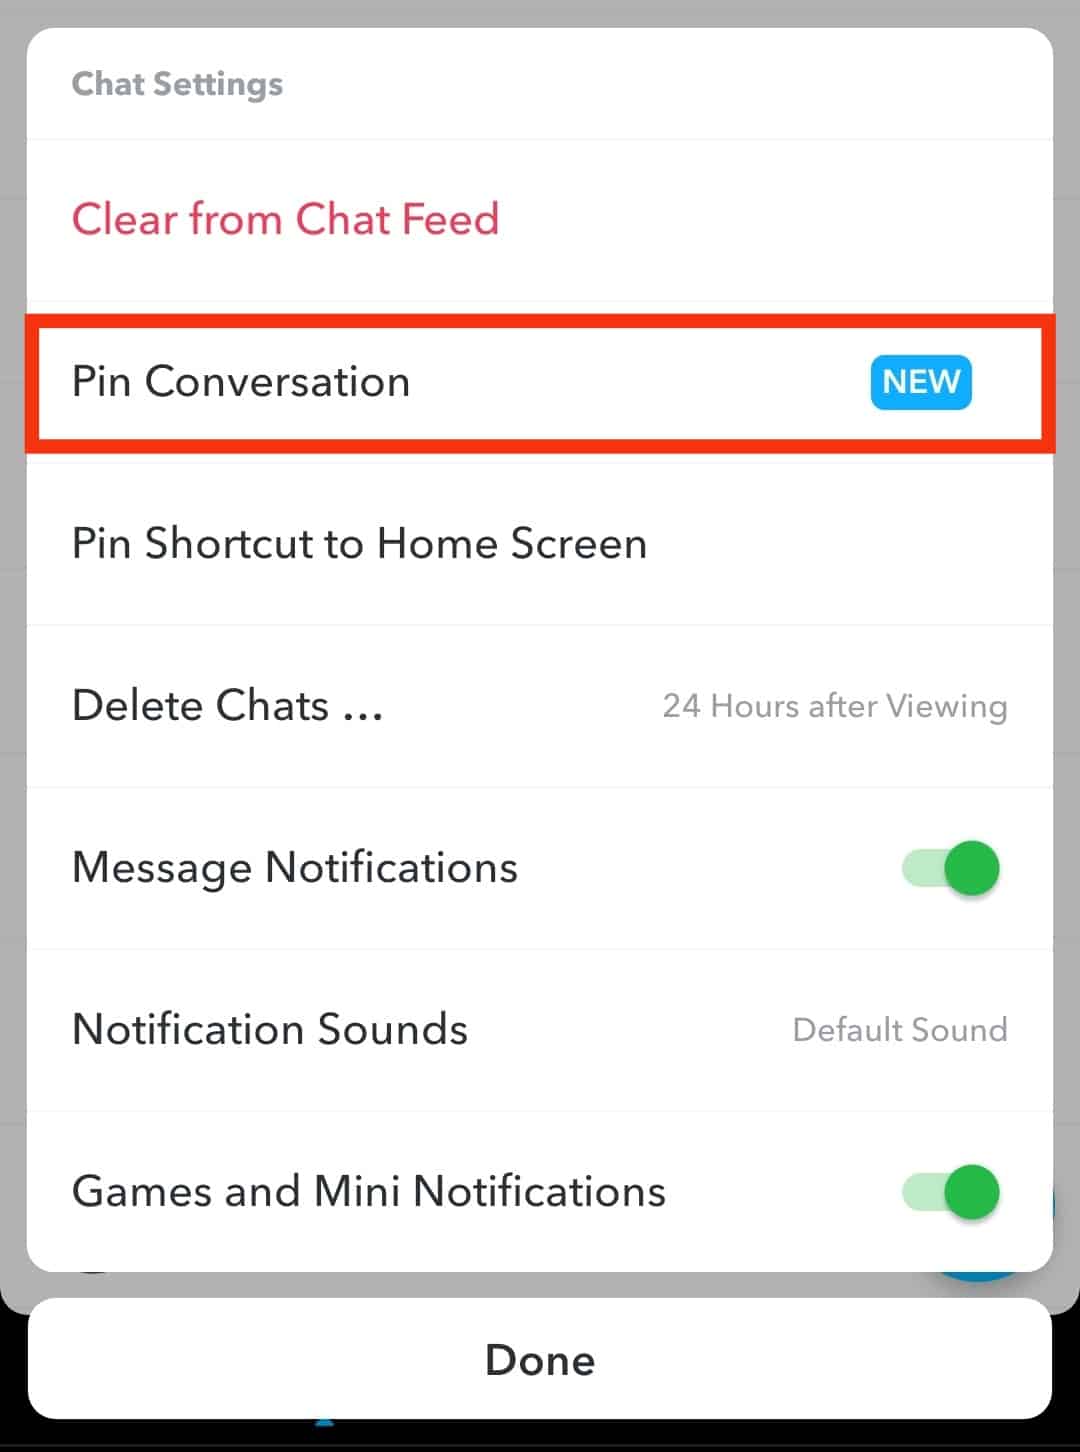 ¿Qué significa "Pin Conversation" en Snapchat?